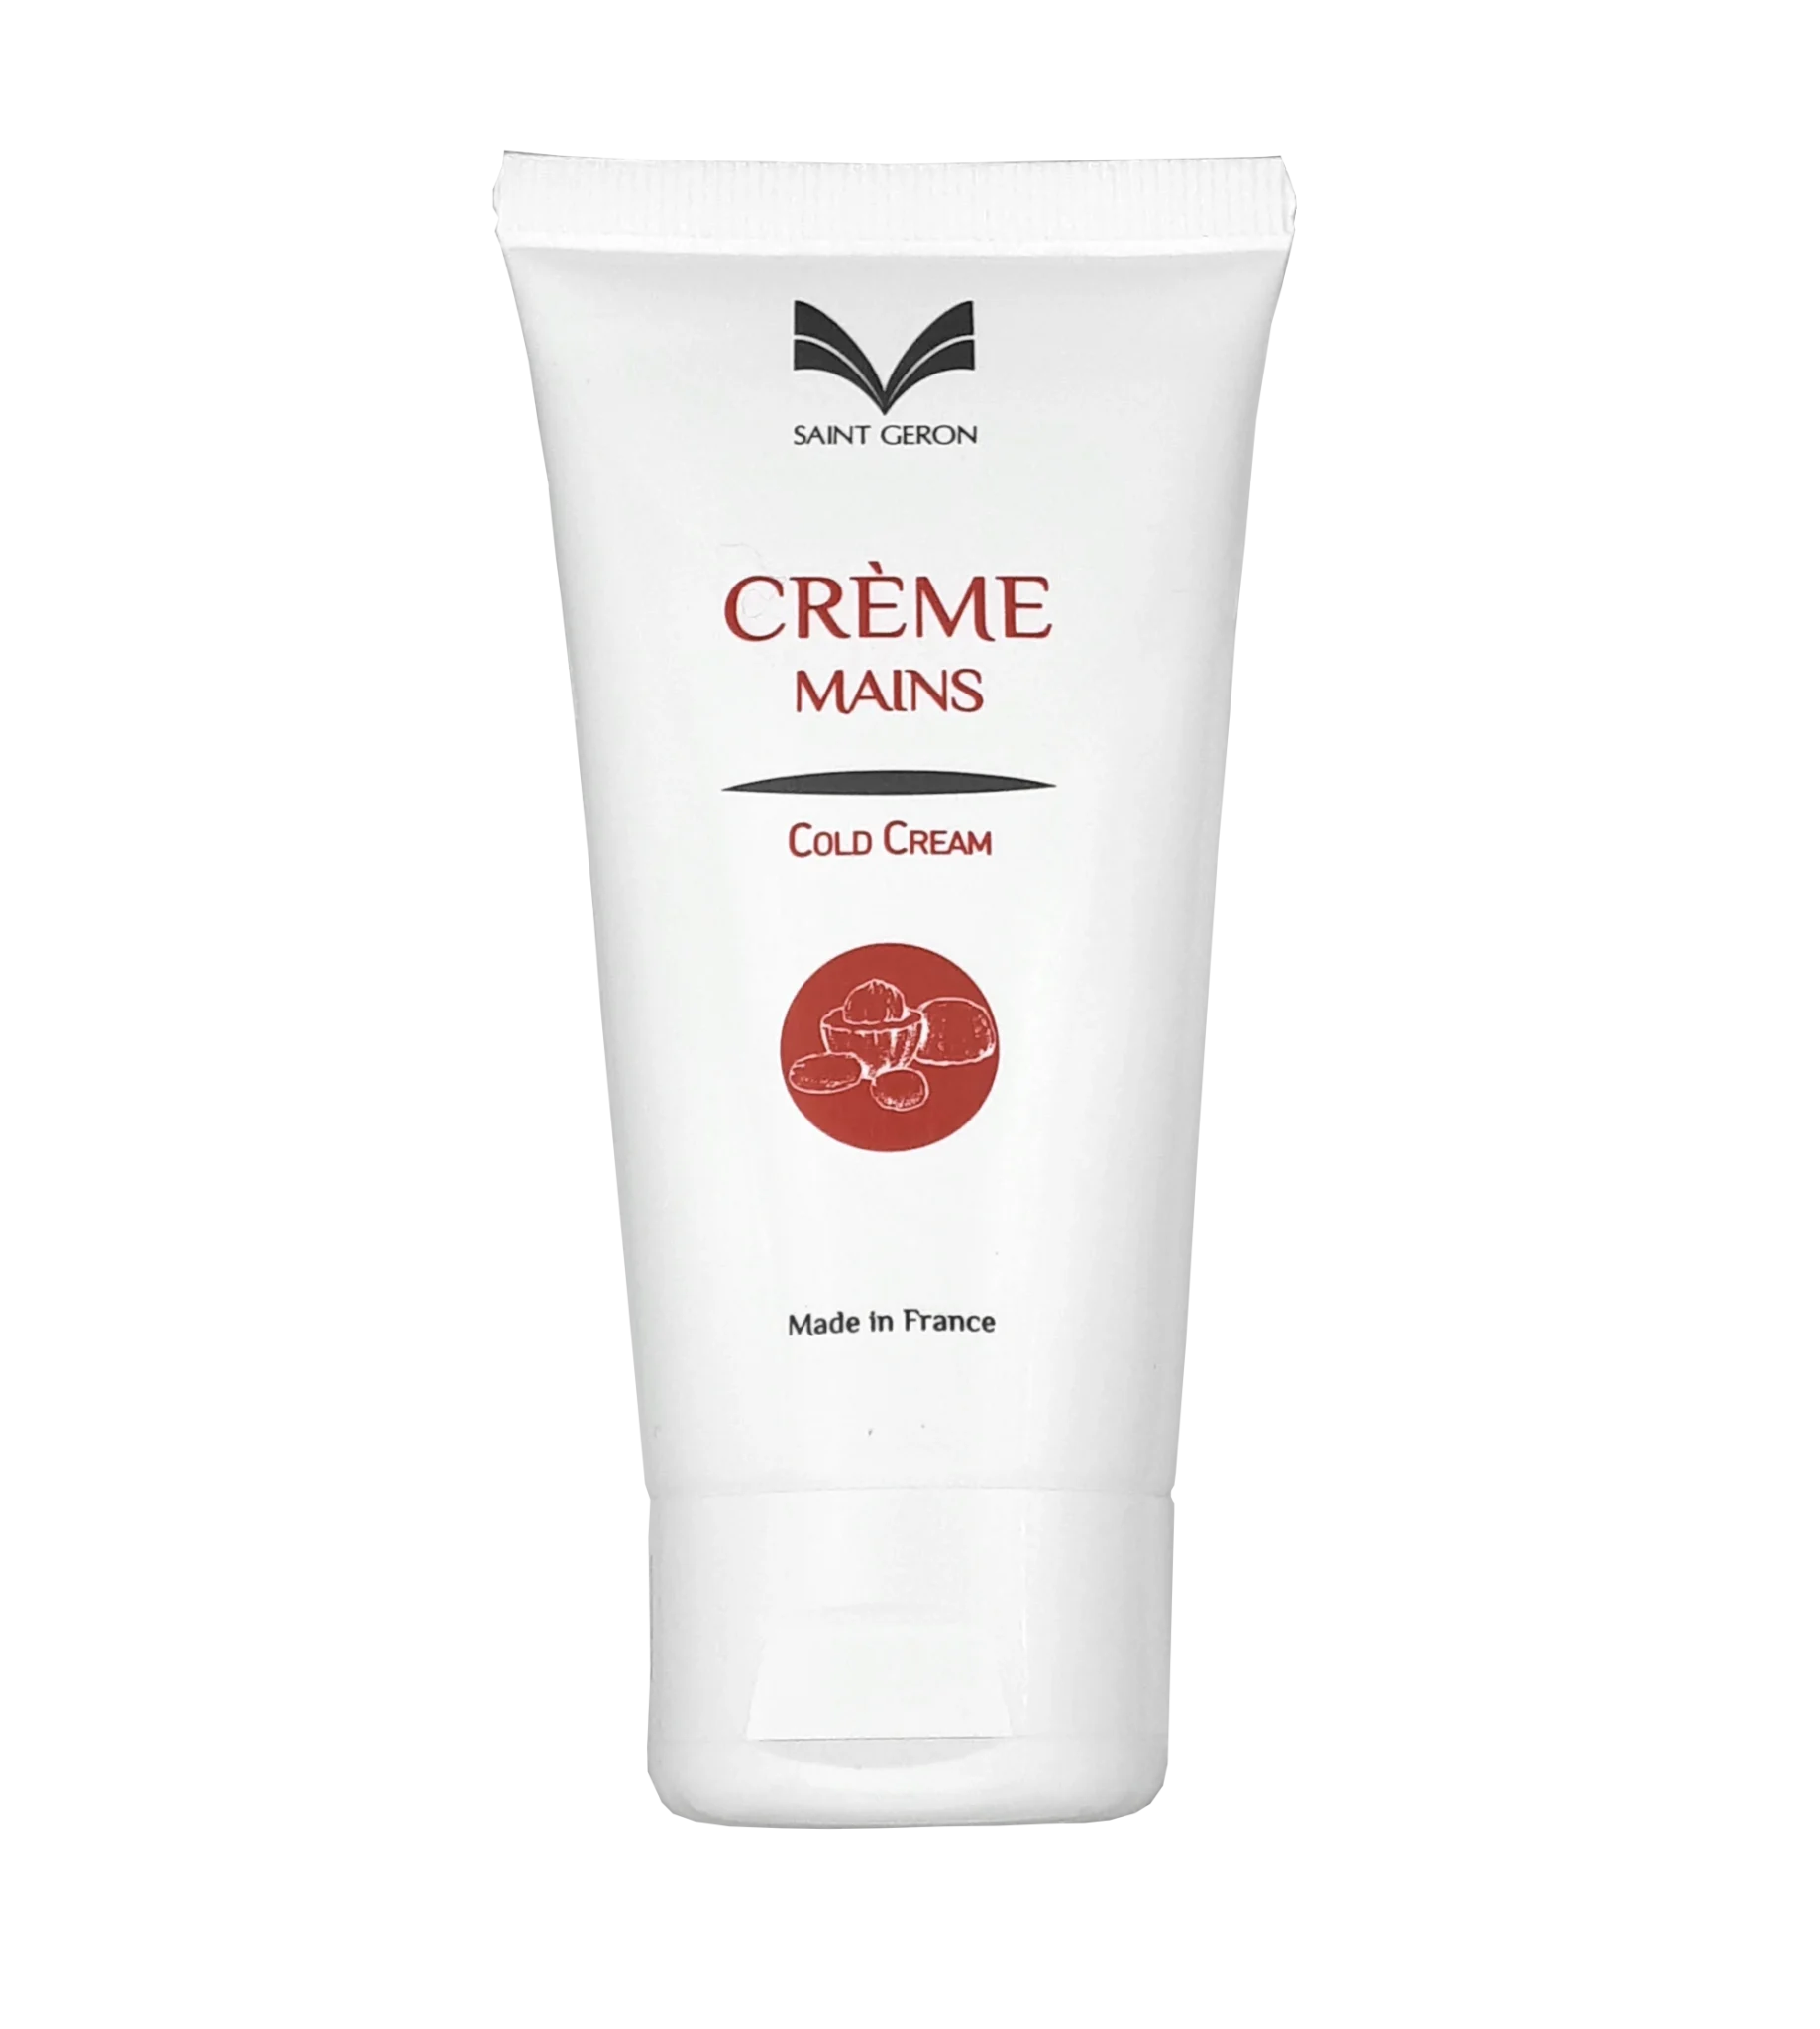 Crème mains au Cold cream SAINT GÉRON - Cosmetosource